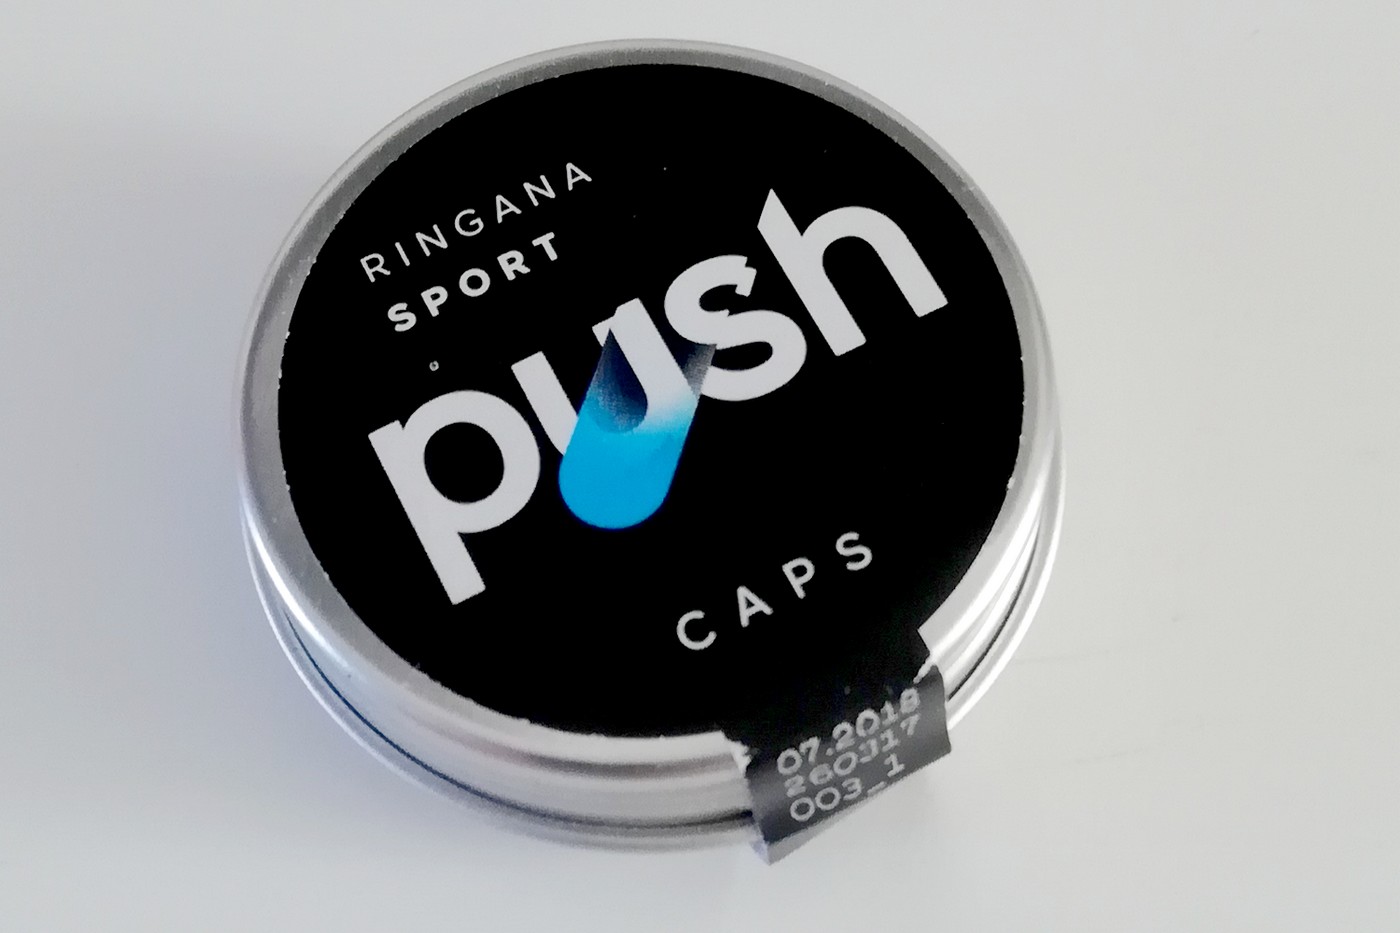 Ringana Sport Push 90 Kapseln - Vorschaubild